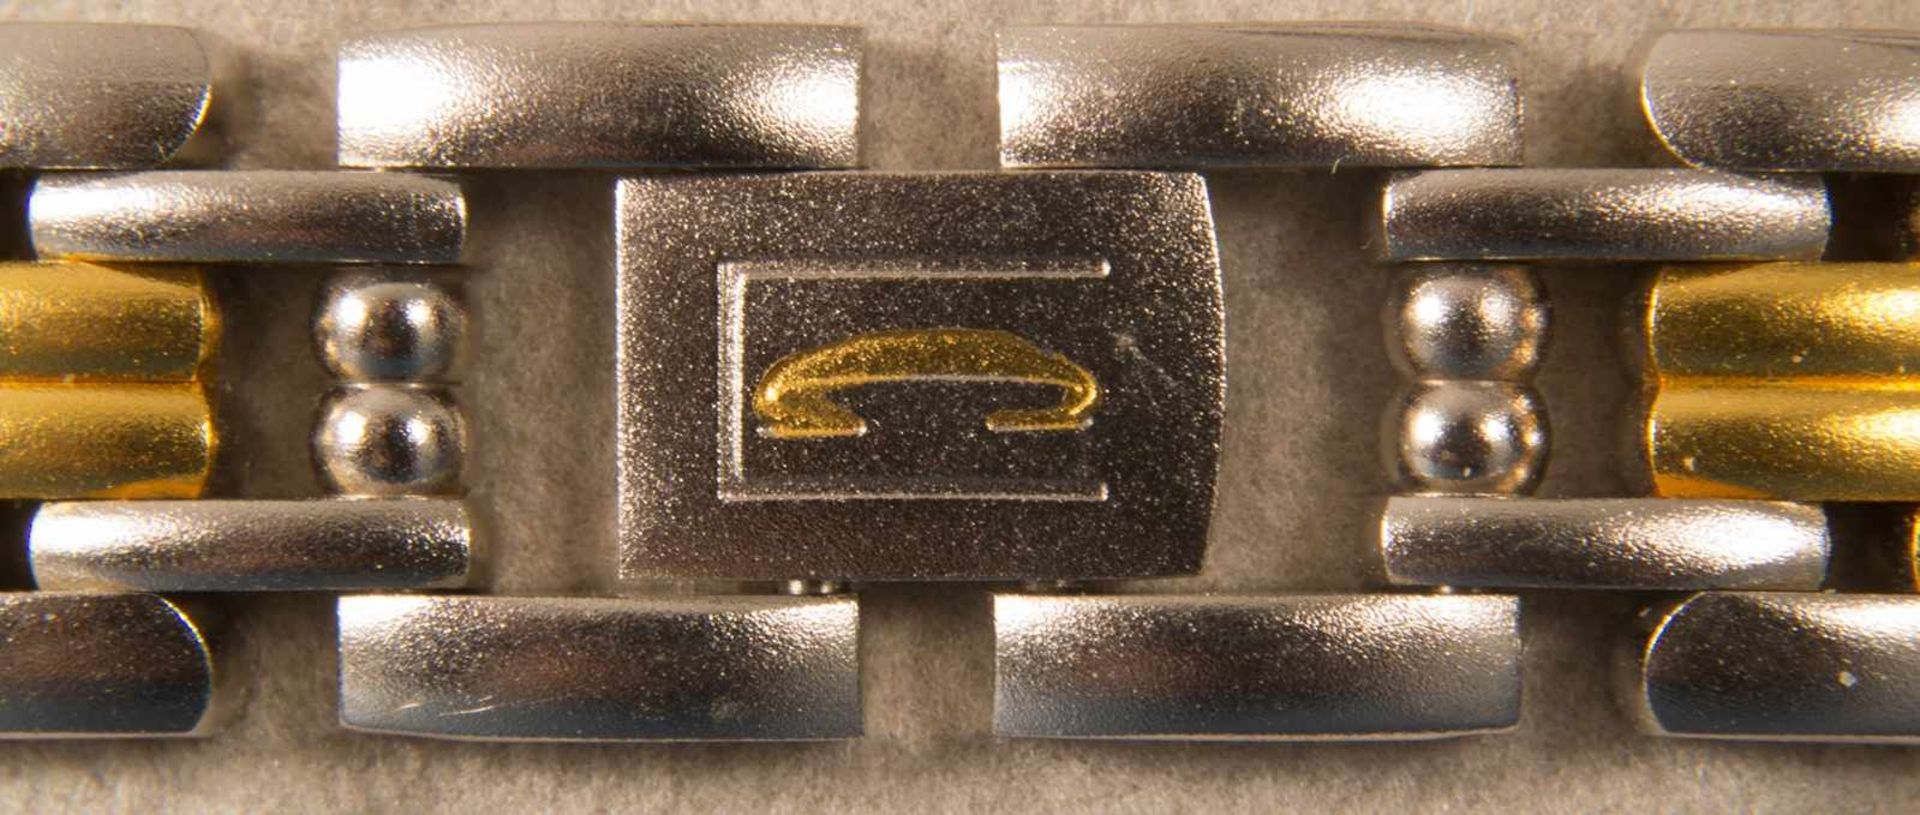 CITIZEN - CLARITI - BICOLOR (Stahl/Gold) Damenarmbanduhr, Ziffernblatt mit figürlicher Vignette (Reh - Bild 6 aus 8